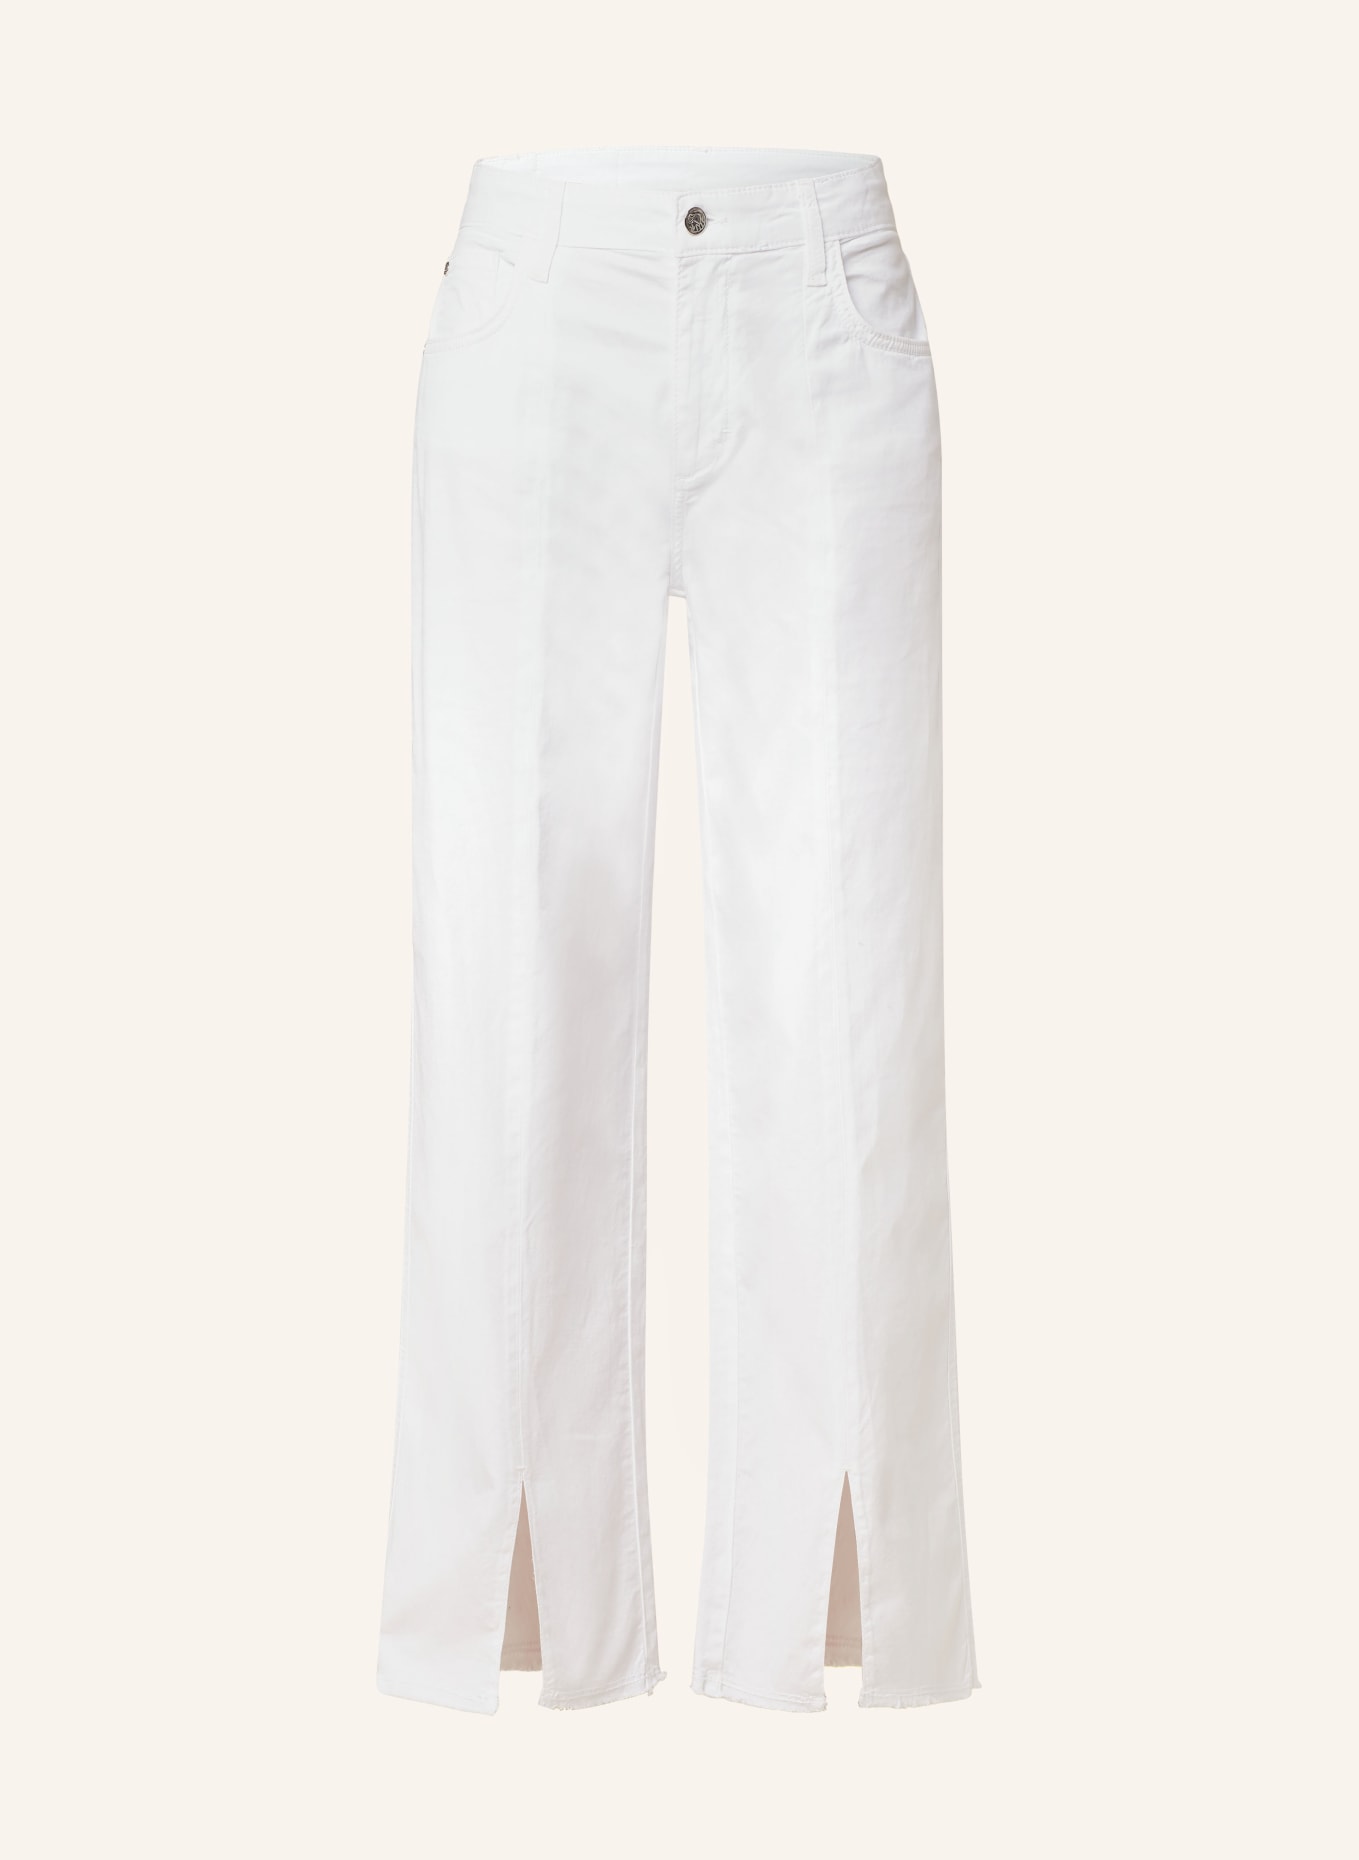 ULLI EHRLICH SPORTALM Mom jeans, Color: WHITE (Image 1)